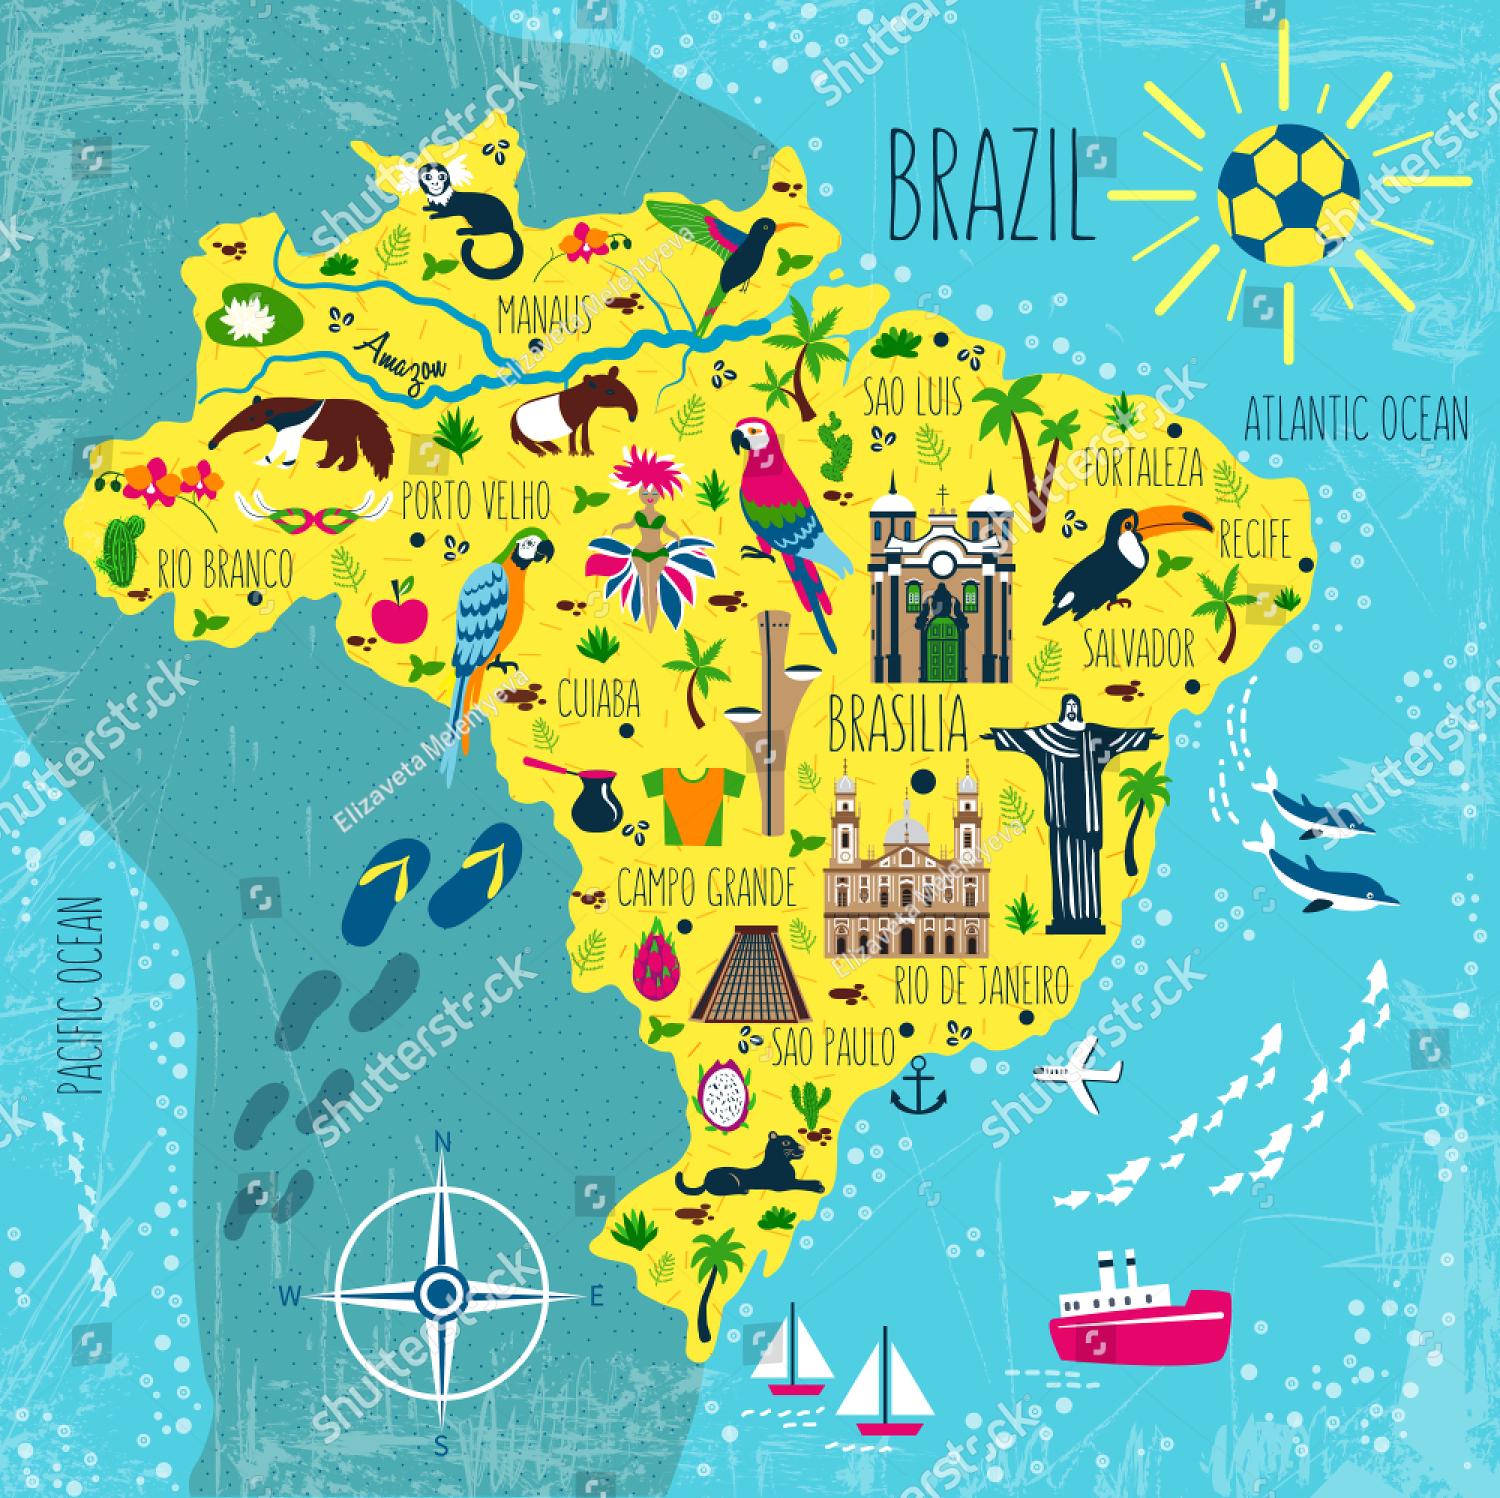 download-koleksi-86-brazil-images-map-terbaik-gambar